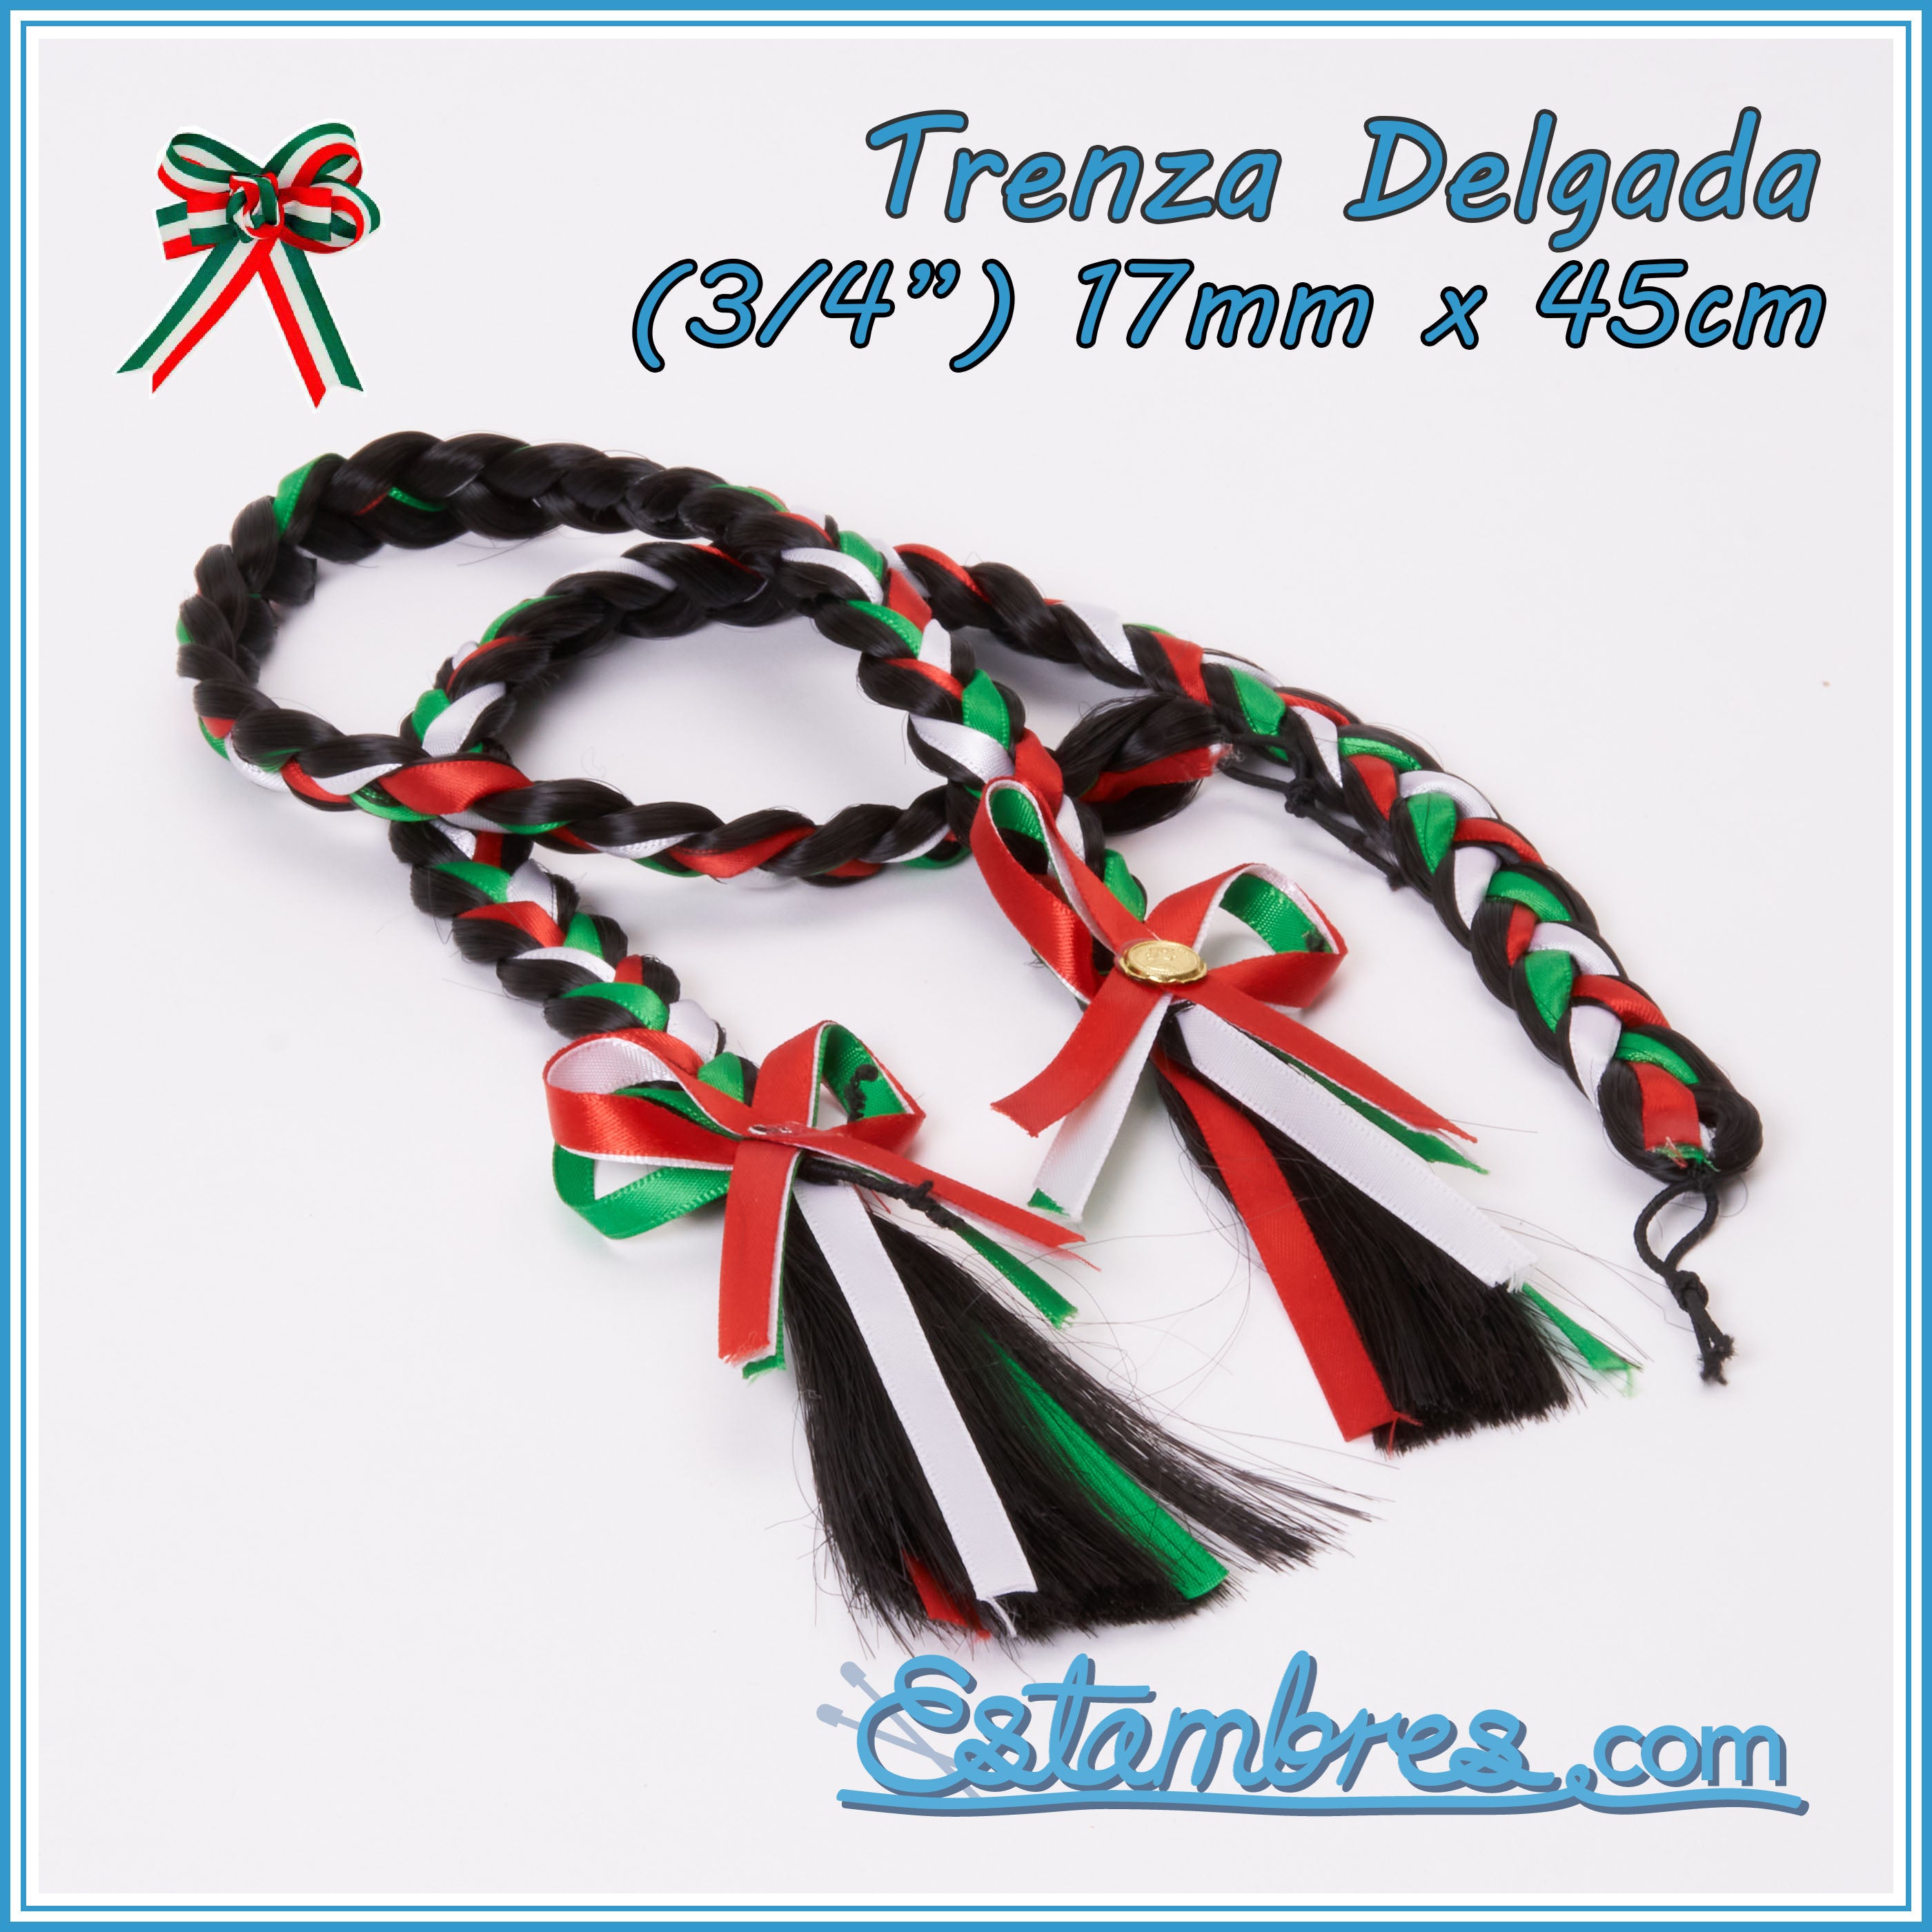 Tricolor Ribbon Diadema Tricolor